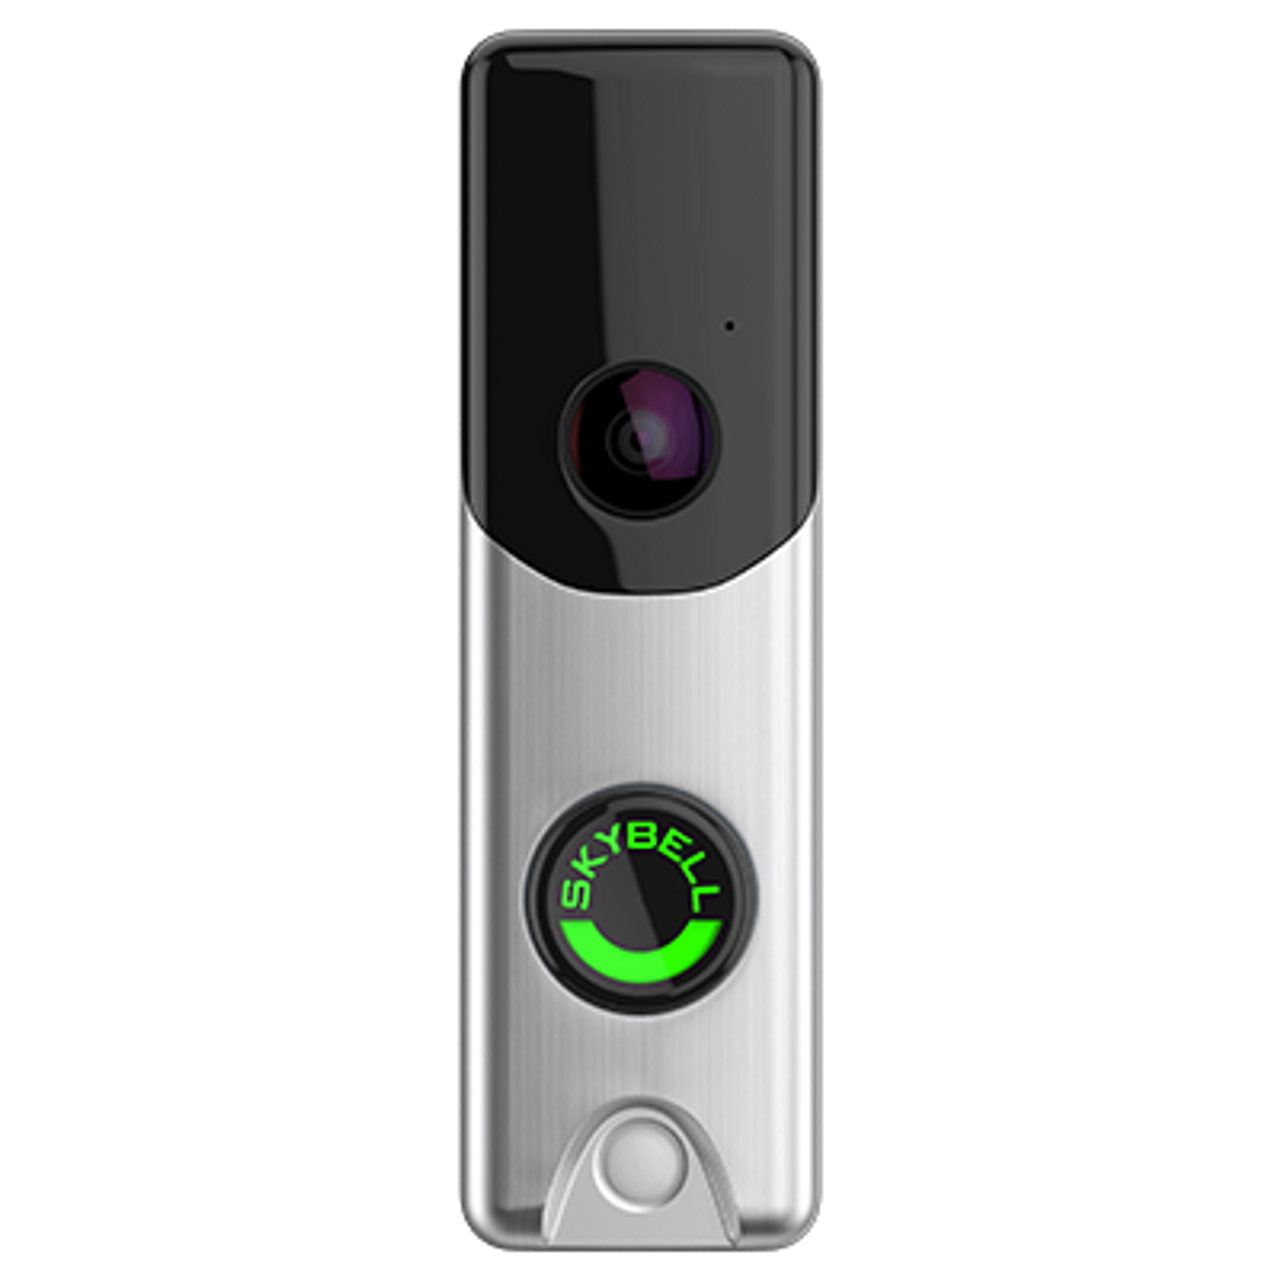 Alarm.com Slimline Doorbell Camera (Satin Nickel) ADC-VDB105X - SS&Si  Dealer Network